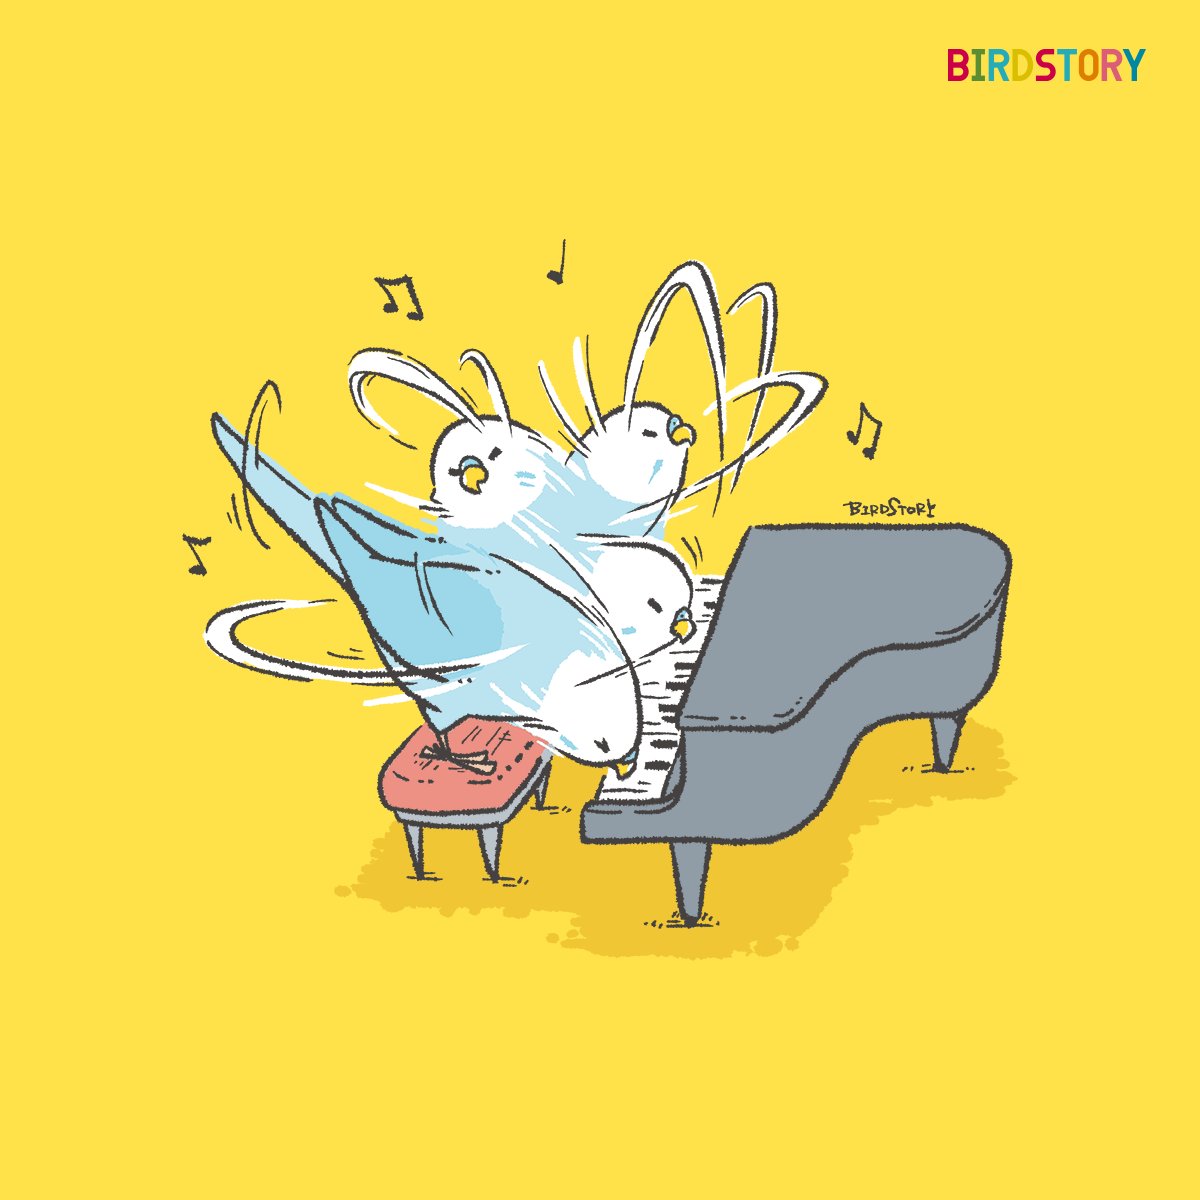 「おはようございます。本日は9月4日、語呂合わせから、クラシック音楽の日とのことで」|BIRDSTORYのイラスト